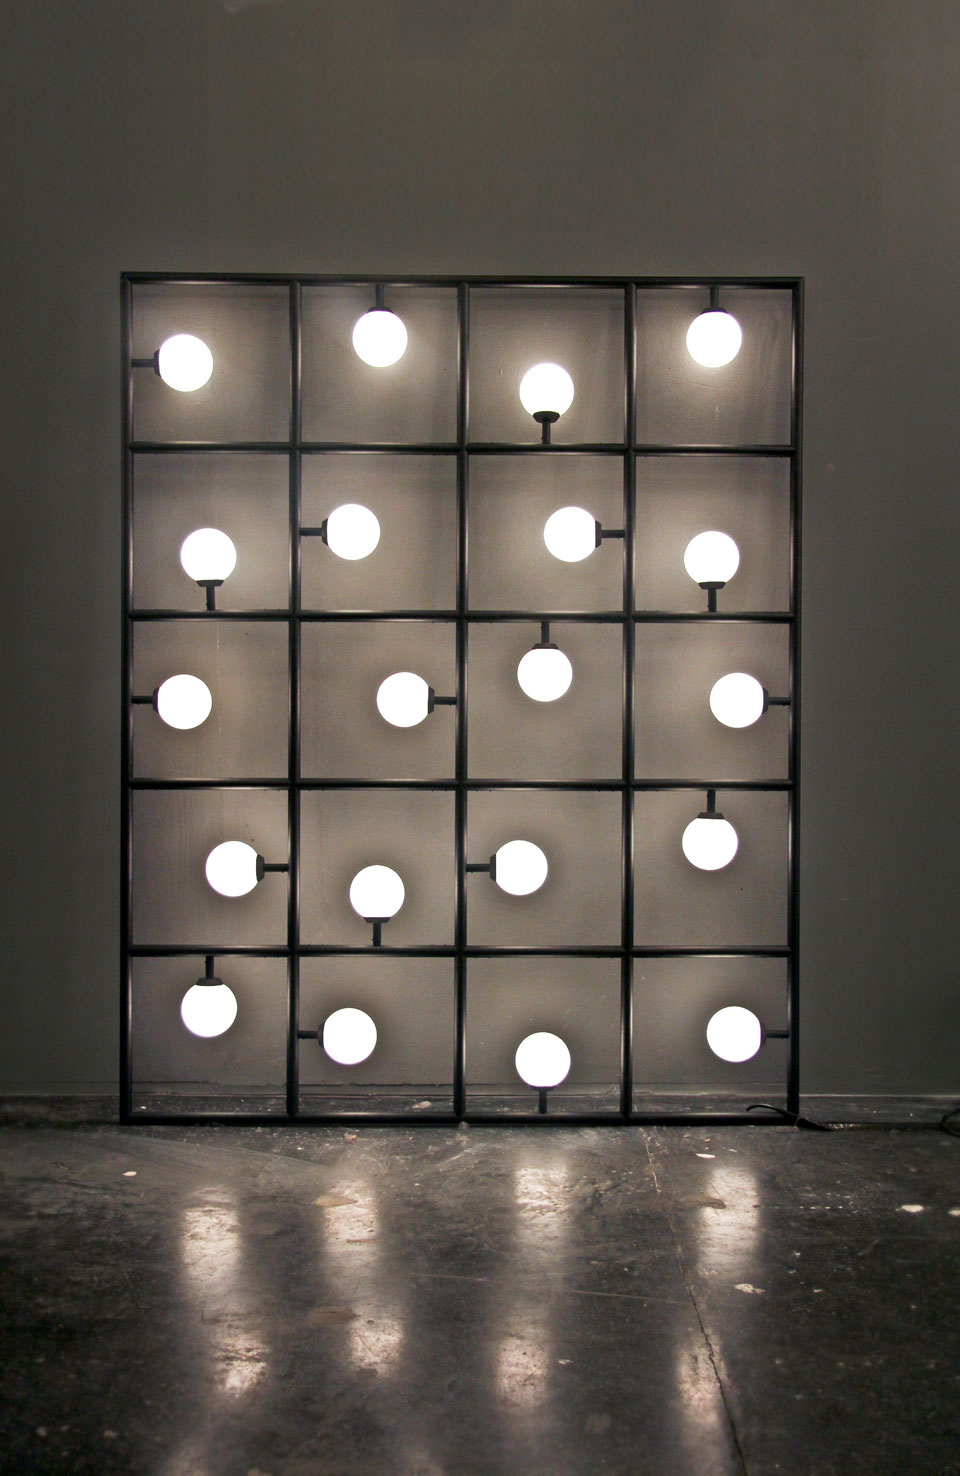 Applique tableau à poser contre un mur Squares LED. Atelier Areti. 